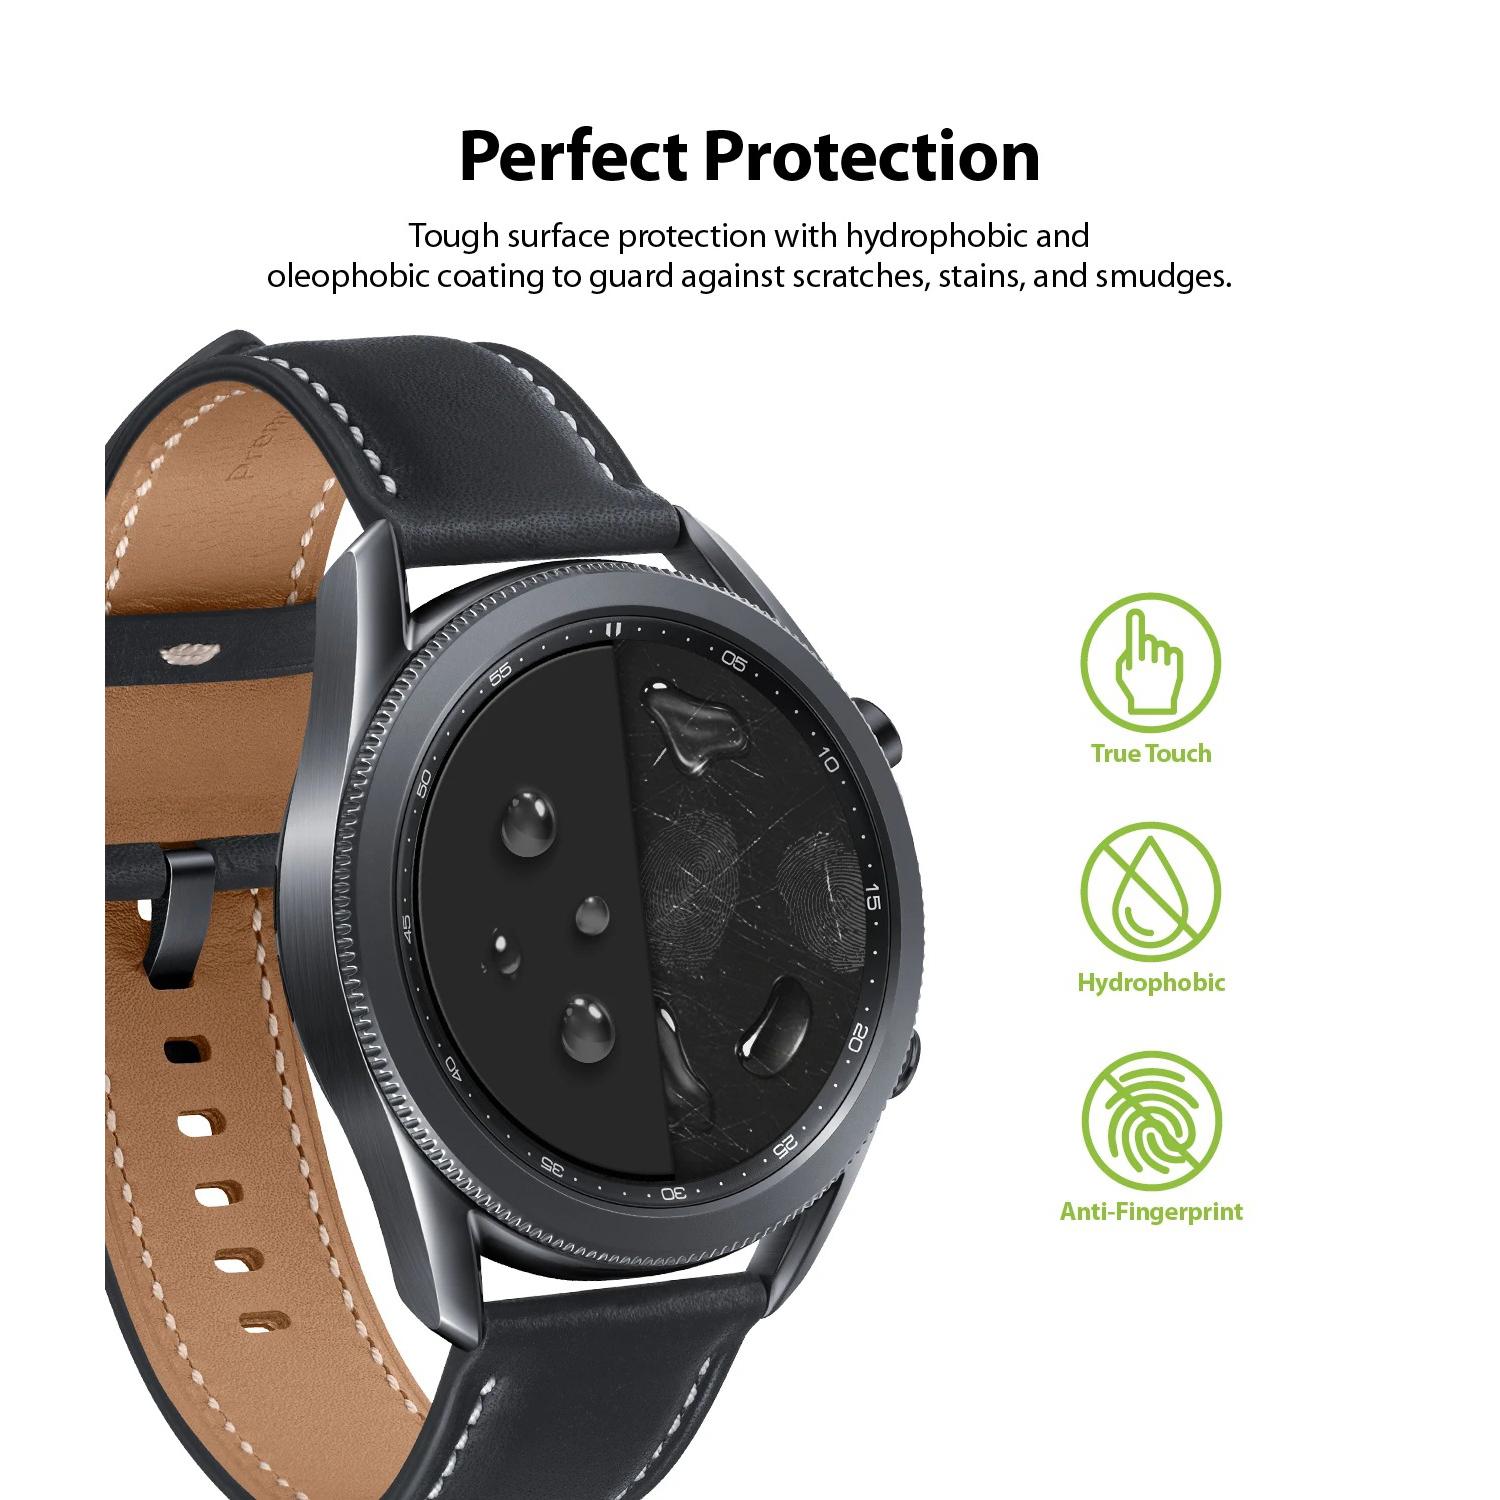 Easy Flex Samsung Galaxy Watch 3 45mm (3-pack)